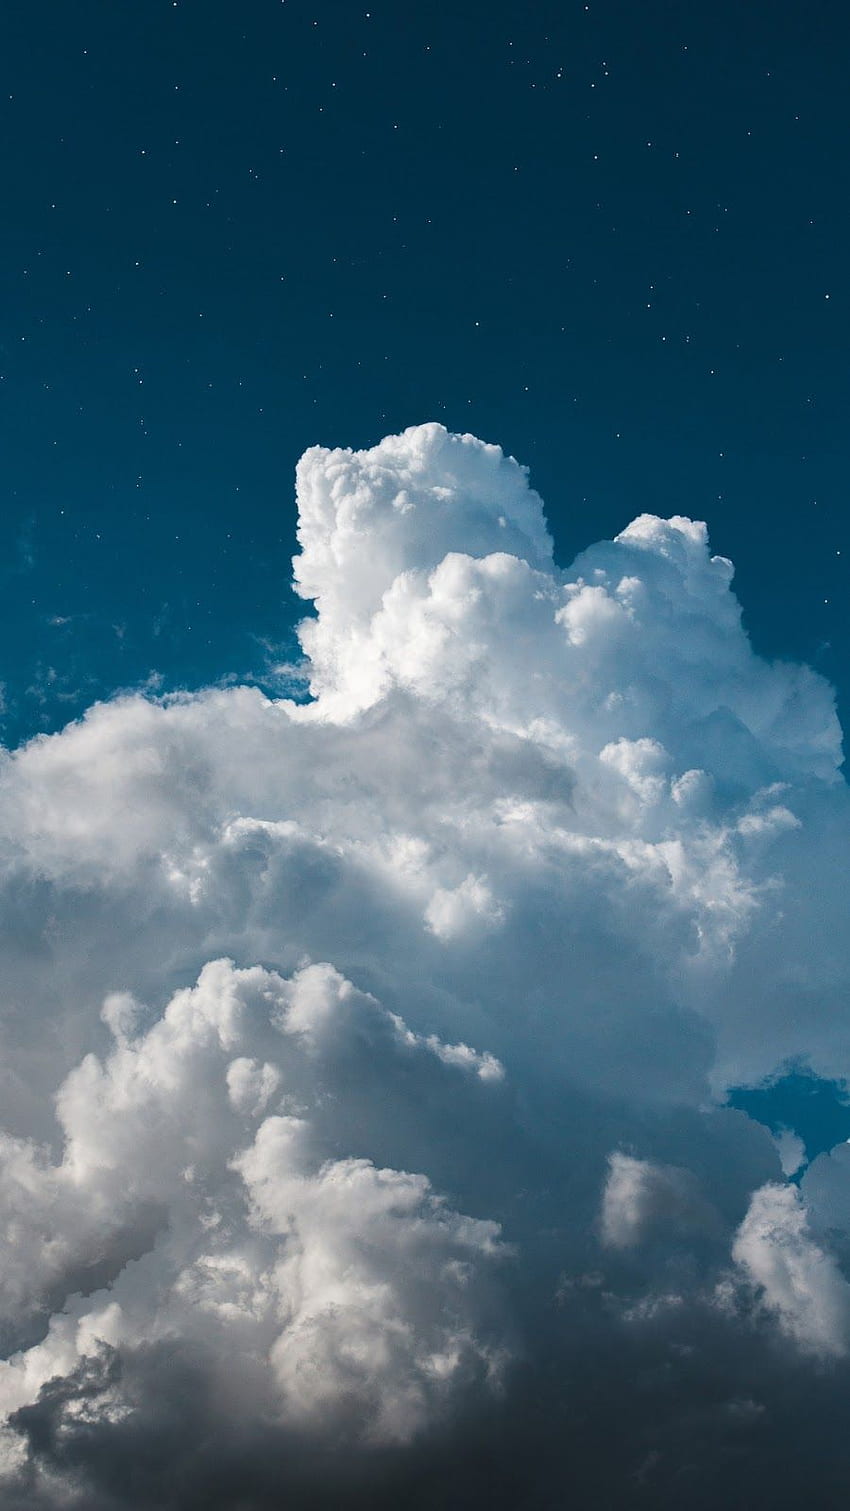 Hình nền mây mềm: Những hình ảnh về mây mềm mại và nhẹ nhàng sẽ khiến bạn cảm thấy thư thái và bình yên. Hãy để những hình nền mây mềm này đưa bạn đến với một thế giới yên bình và thư giãn, bao gồm những cảnh đẹp của núi, đồng cỏ và biển cả.